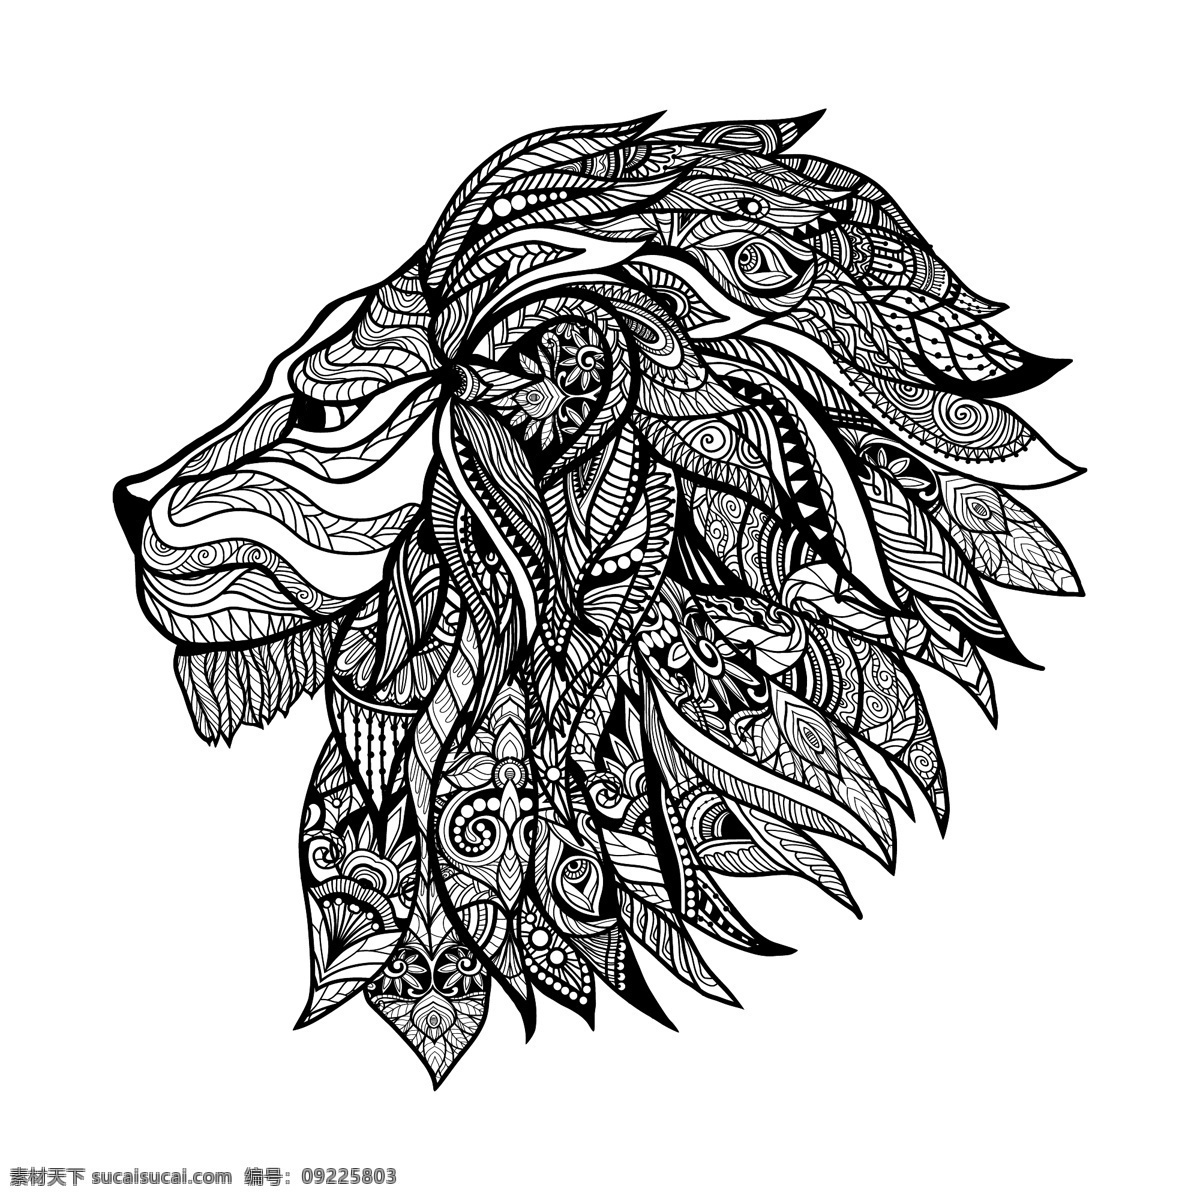 狮子头 面具 纹身 图案 矢量 丛林 部落 黑白 欧美 手绘 艺术 精细 铅笔画 纹理 插画 印刷 卡通